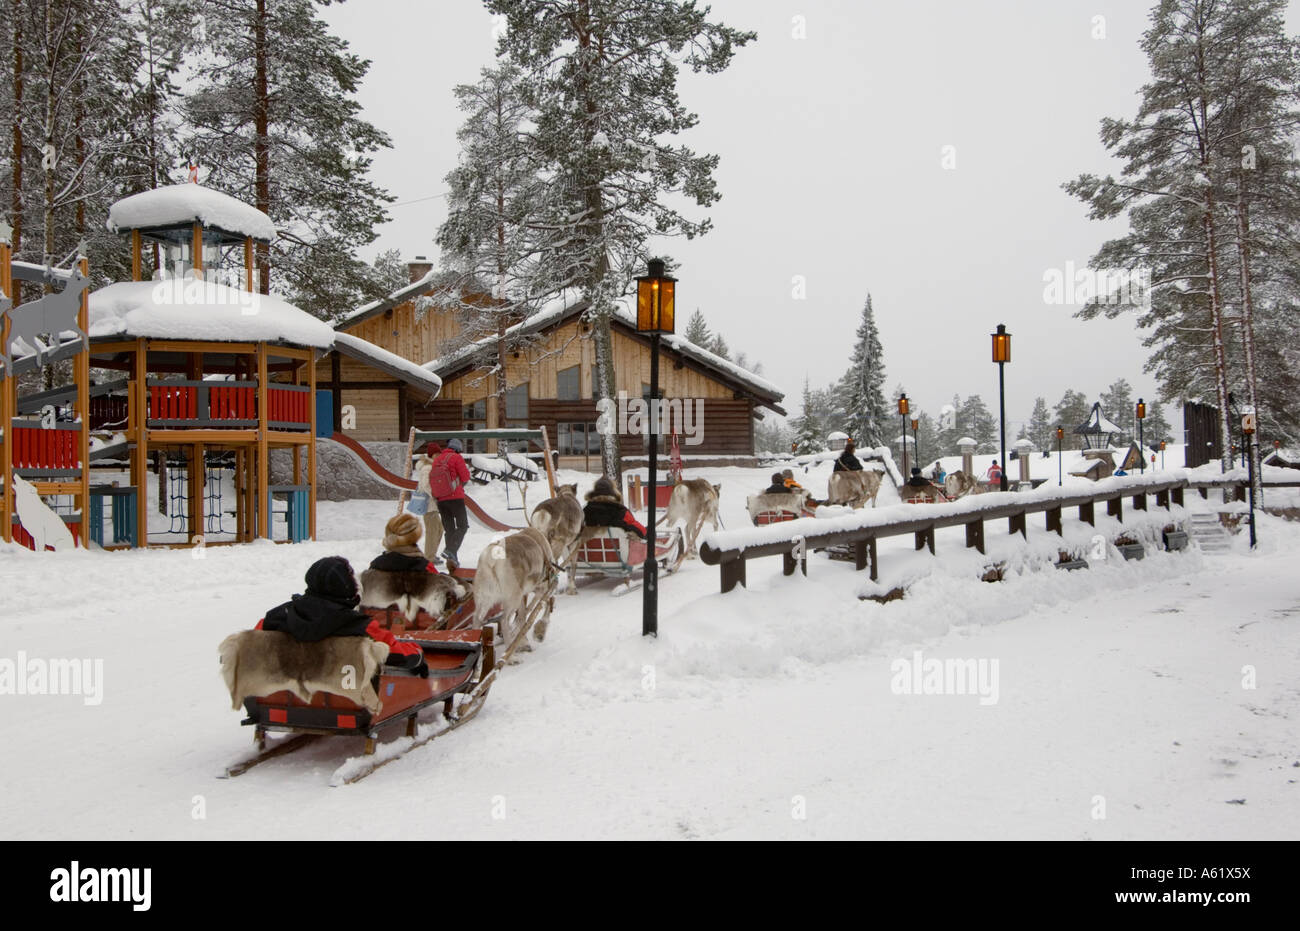 Touristen in Schlitten, gezogen von Rentieren, Santa Claus Village, Rovaniemi, Lappland, Finnland, Europa, Arktis Stockfoto